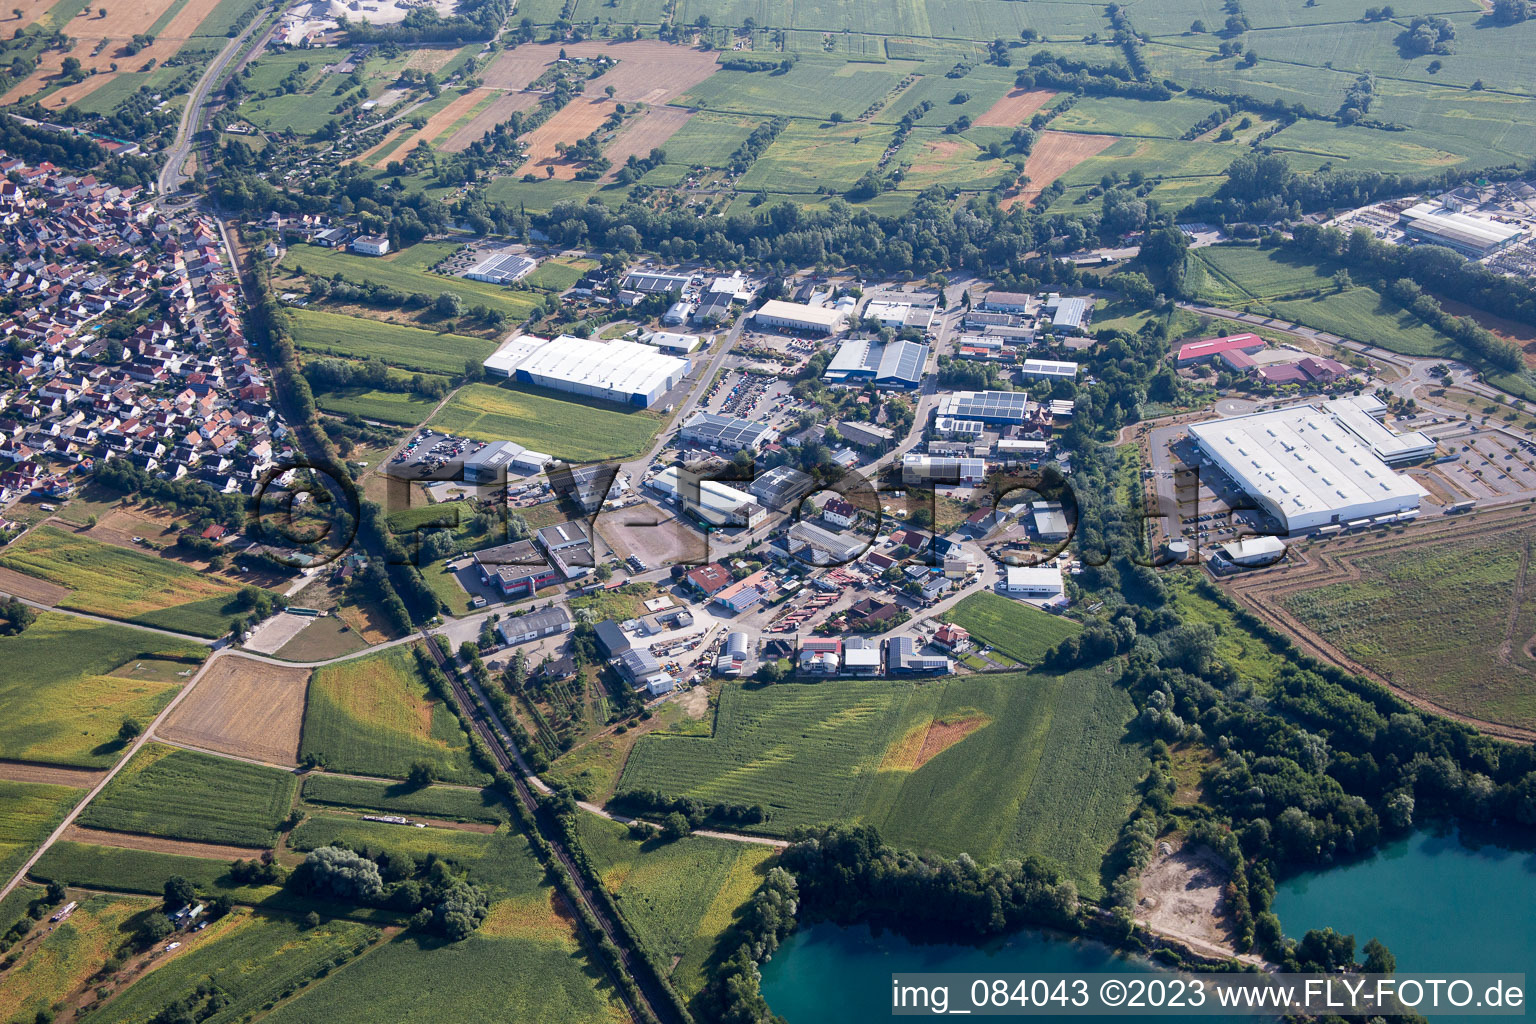 Vue aérienne de Zone industrielle à Hagenbach dans le département Rhénanie-Palatinat, Allemagne